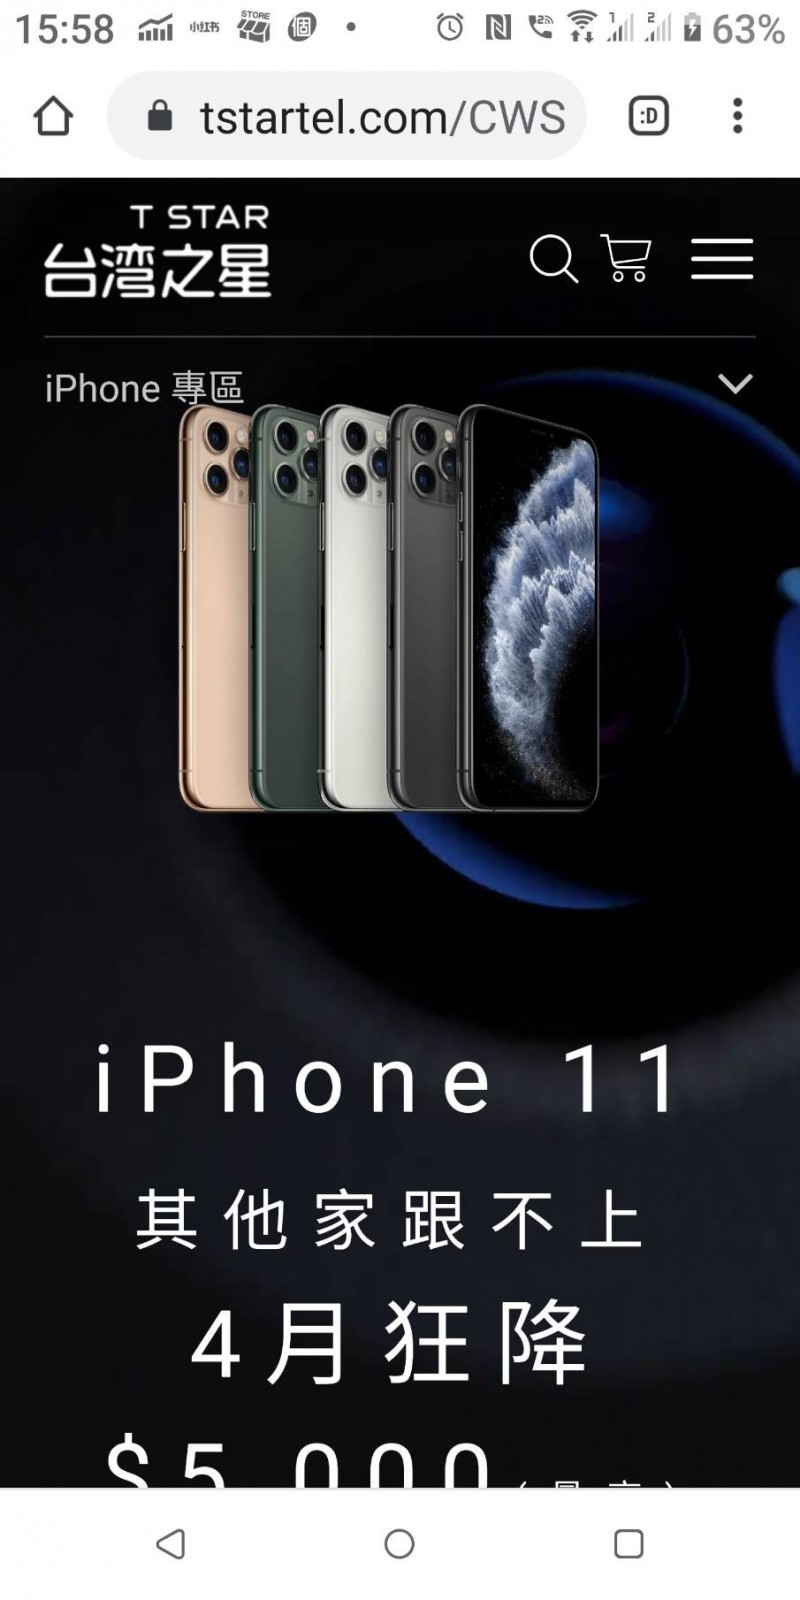 史上最便宜iphone Se登場台灣大 台灣之星搶預約商機 自由財經